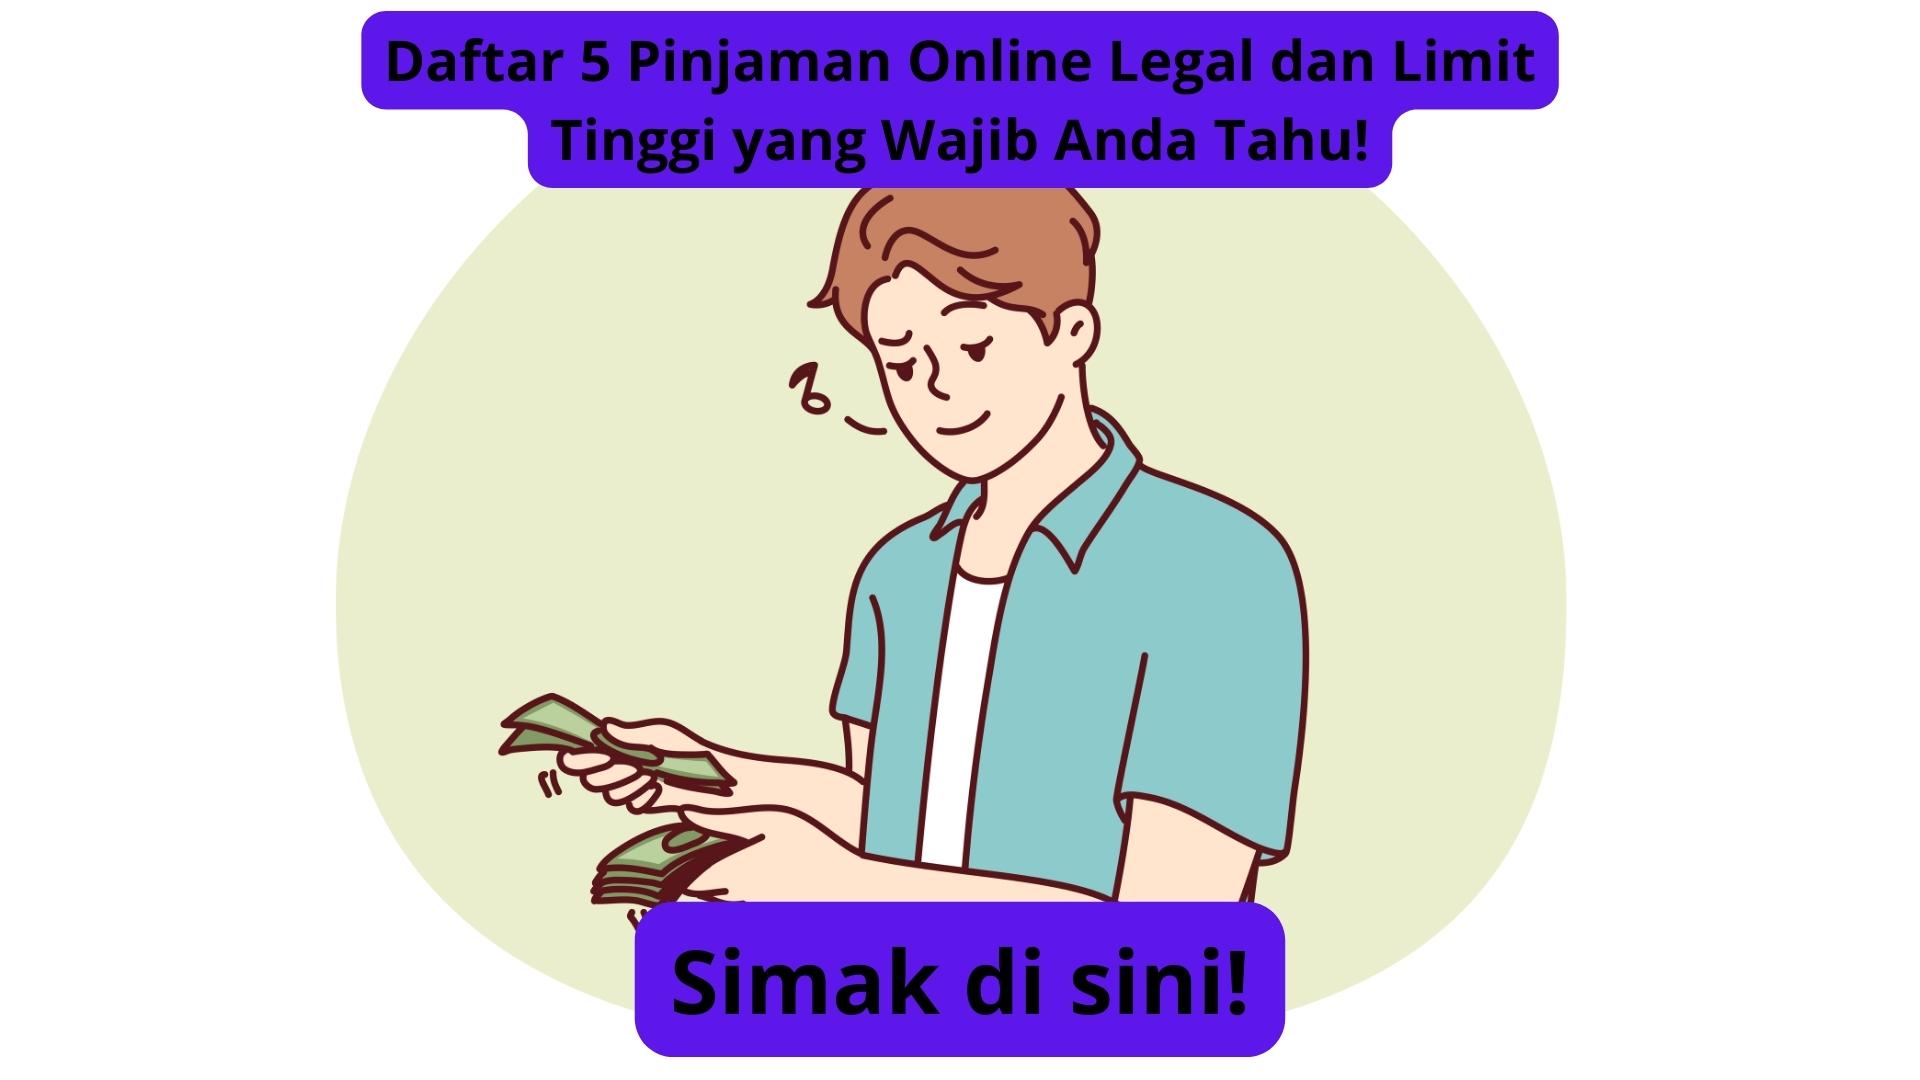 Daftar 5 Pinjaman Online Legal dan Limit Tinggi yang Wajib Anda Tahu! Catat Baik-baik